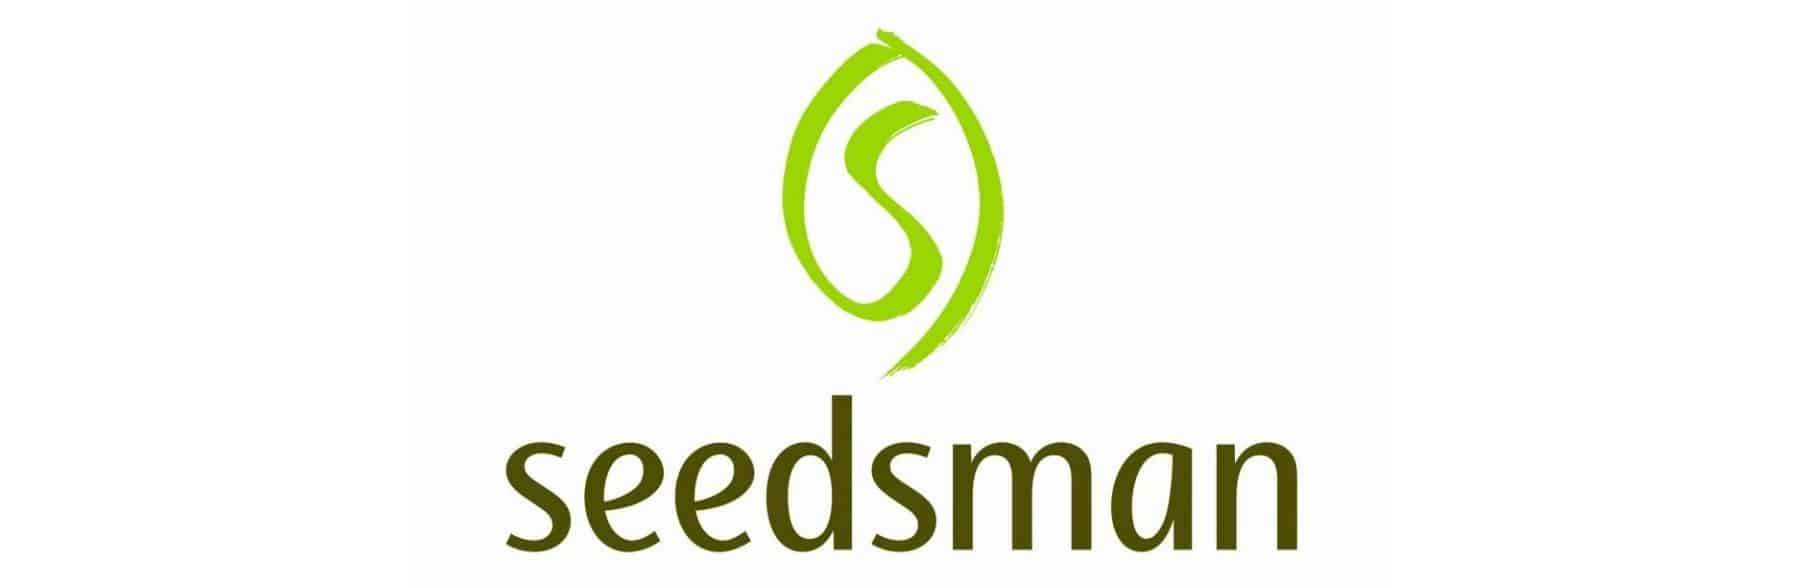 Seedsman Marijuana Seed Bank Review